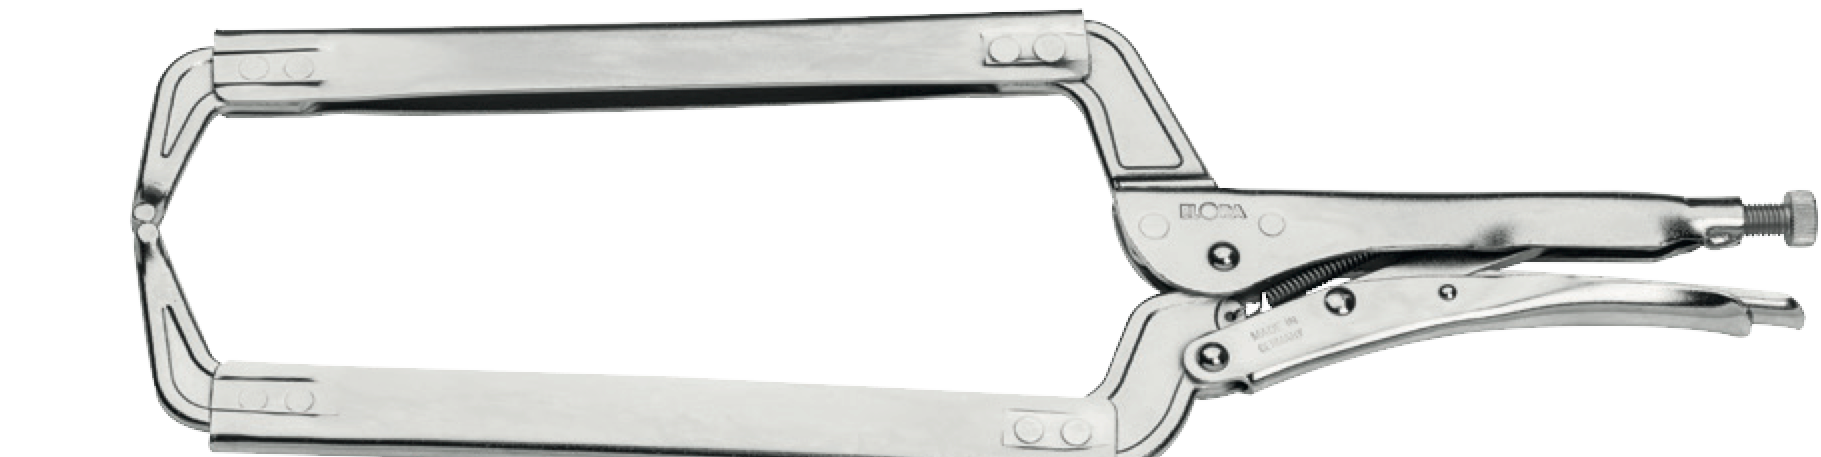 ELORA 507 C-Clamp Grip Plier (ELORA Tools) - Premium C-Clamp Grip Plier from ELORA - Shop now at Yew Aik.